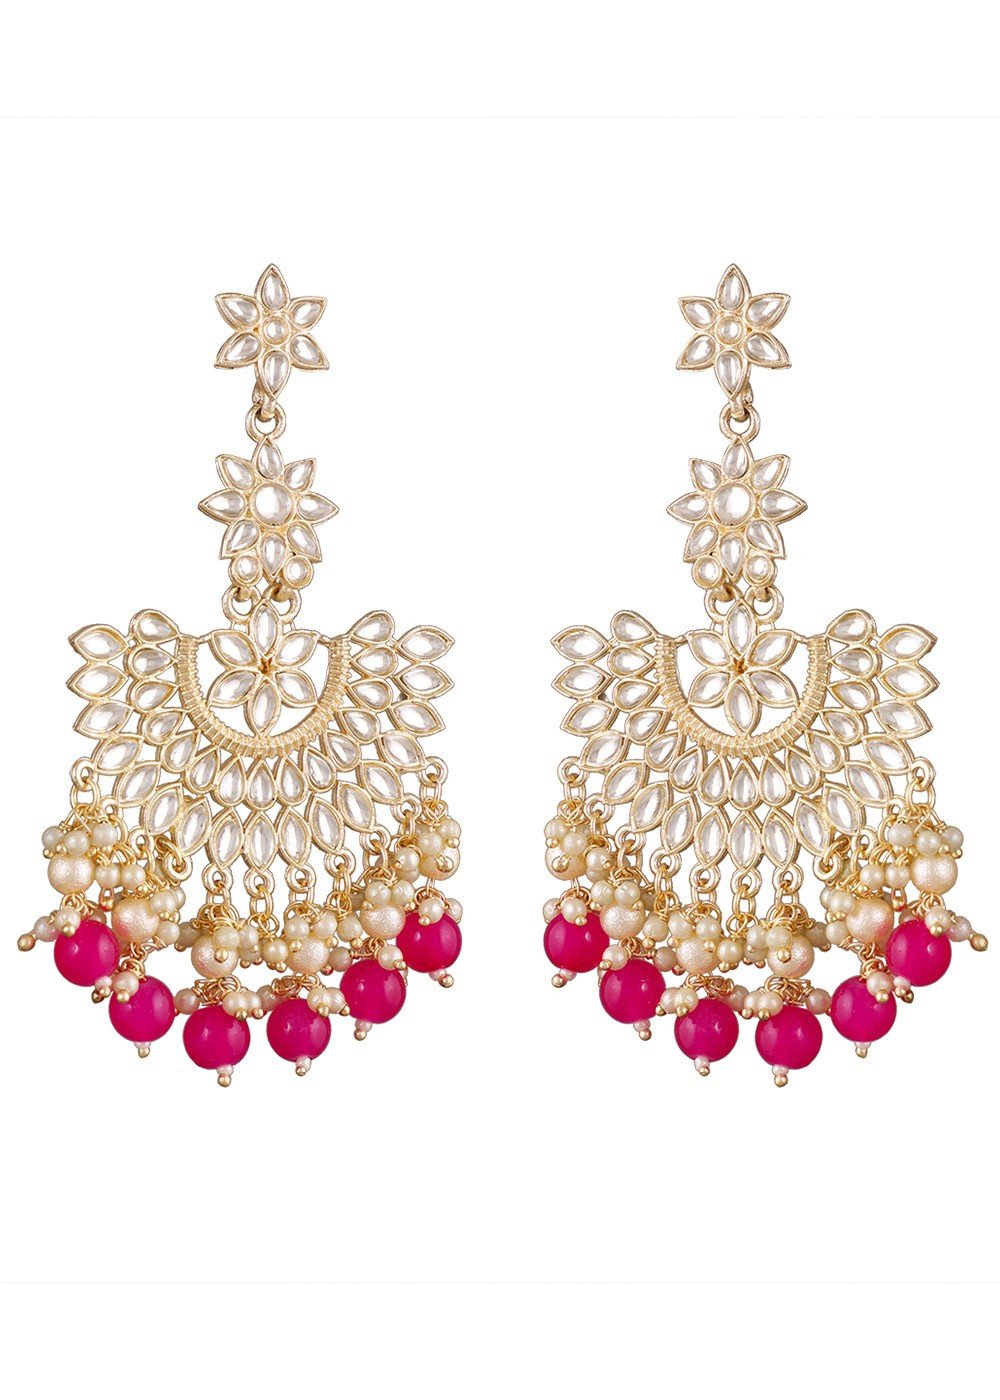 Buy Fancy Pink Diamond Earrings Online From Surat Wholesale Shop